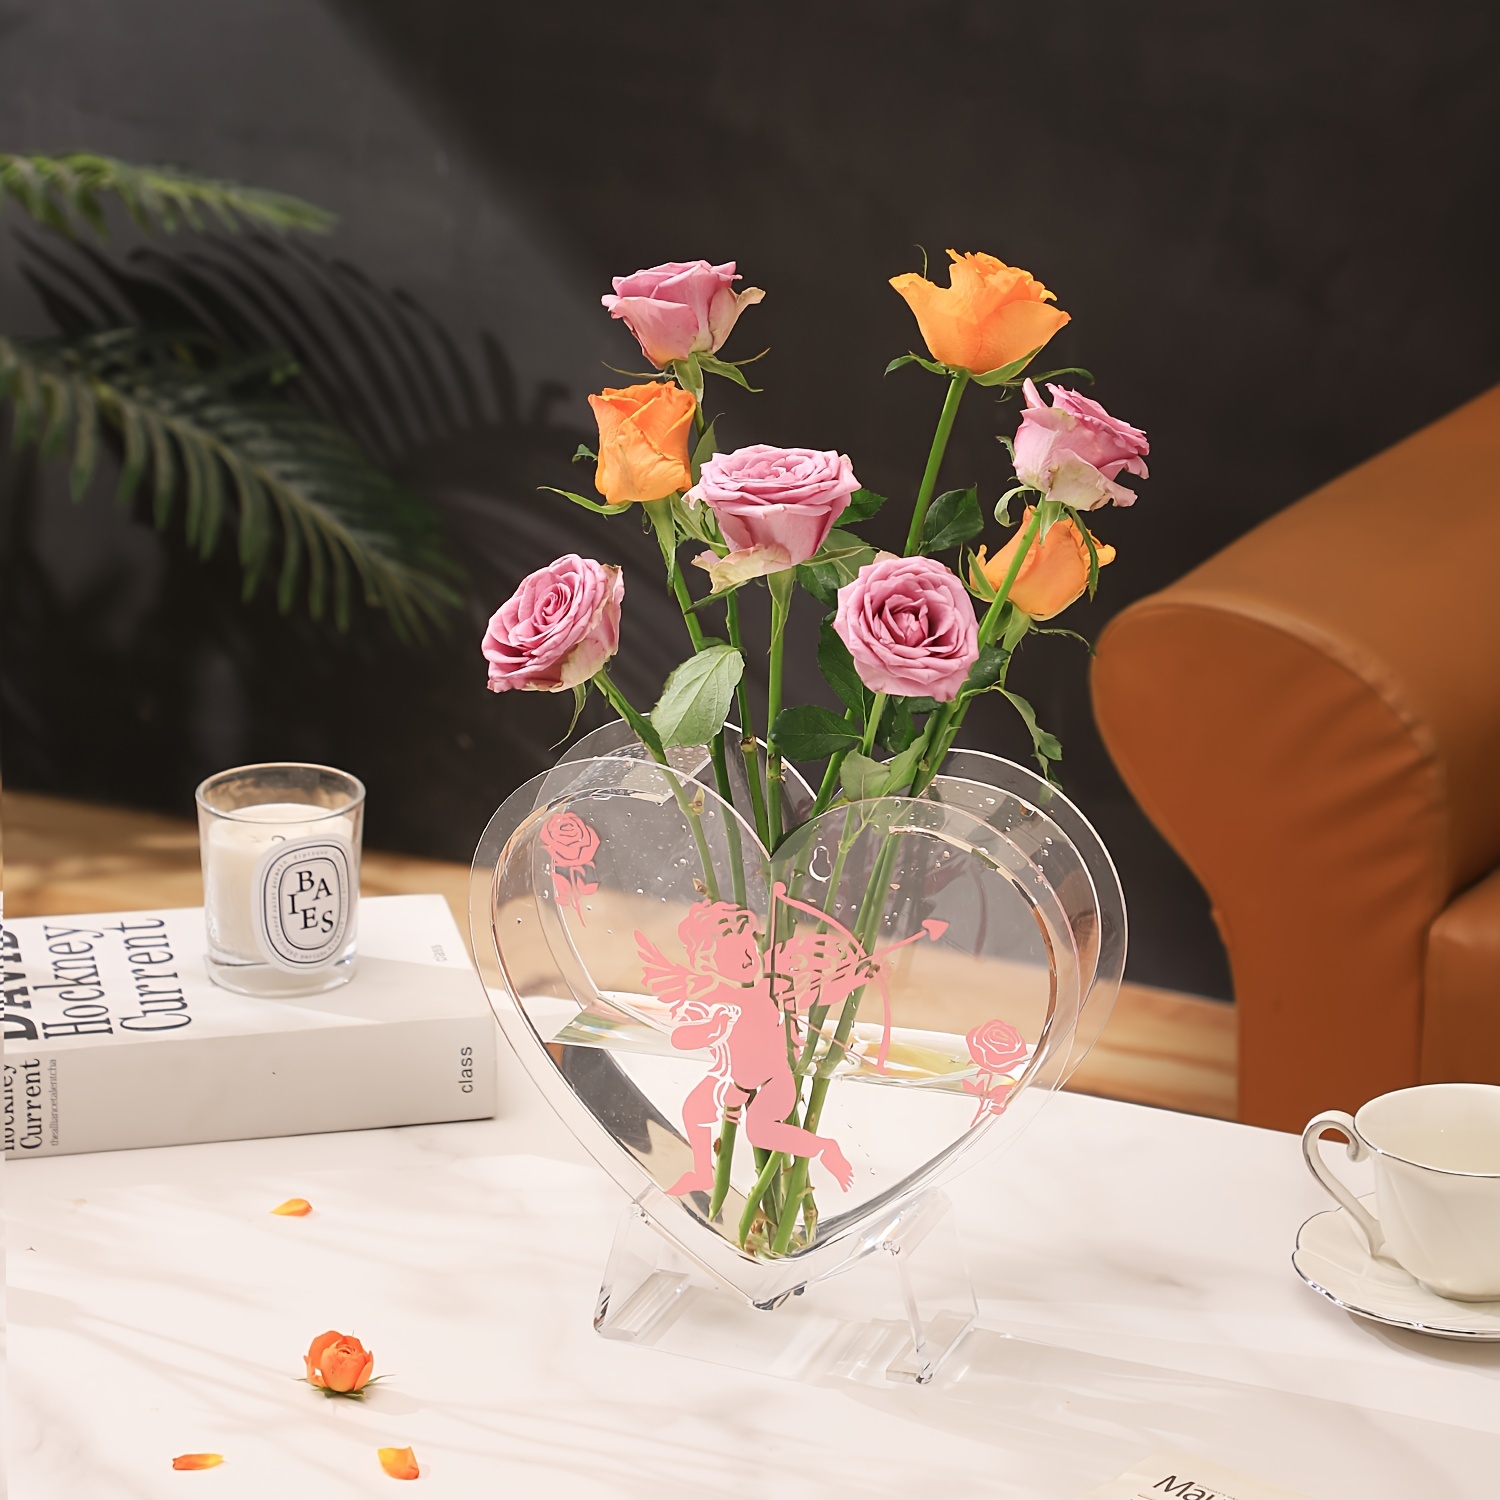 1pc Modern Heart Shaped Acrylic Flower Vase, Aesthetic Vase For Home Decor, Modern Decorative Vase For Wedding, Living Room, Bedroom, Table, Office, H